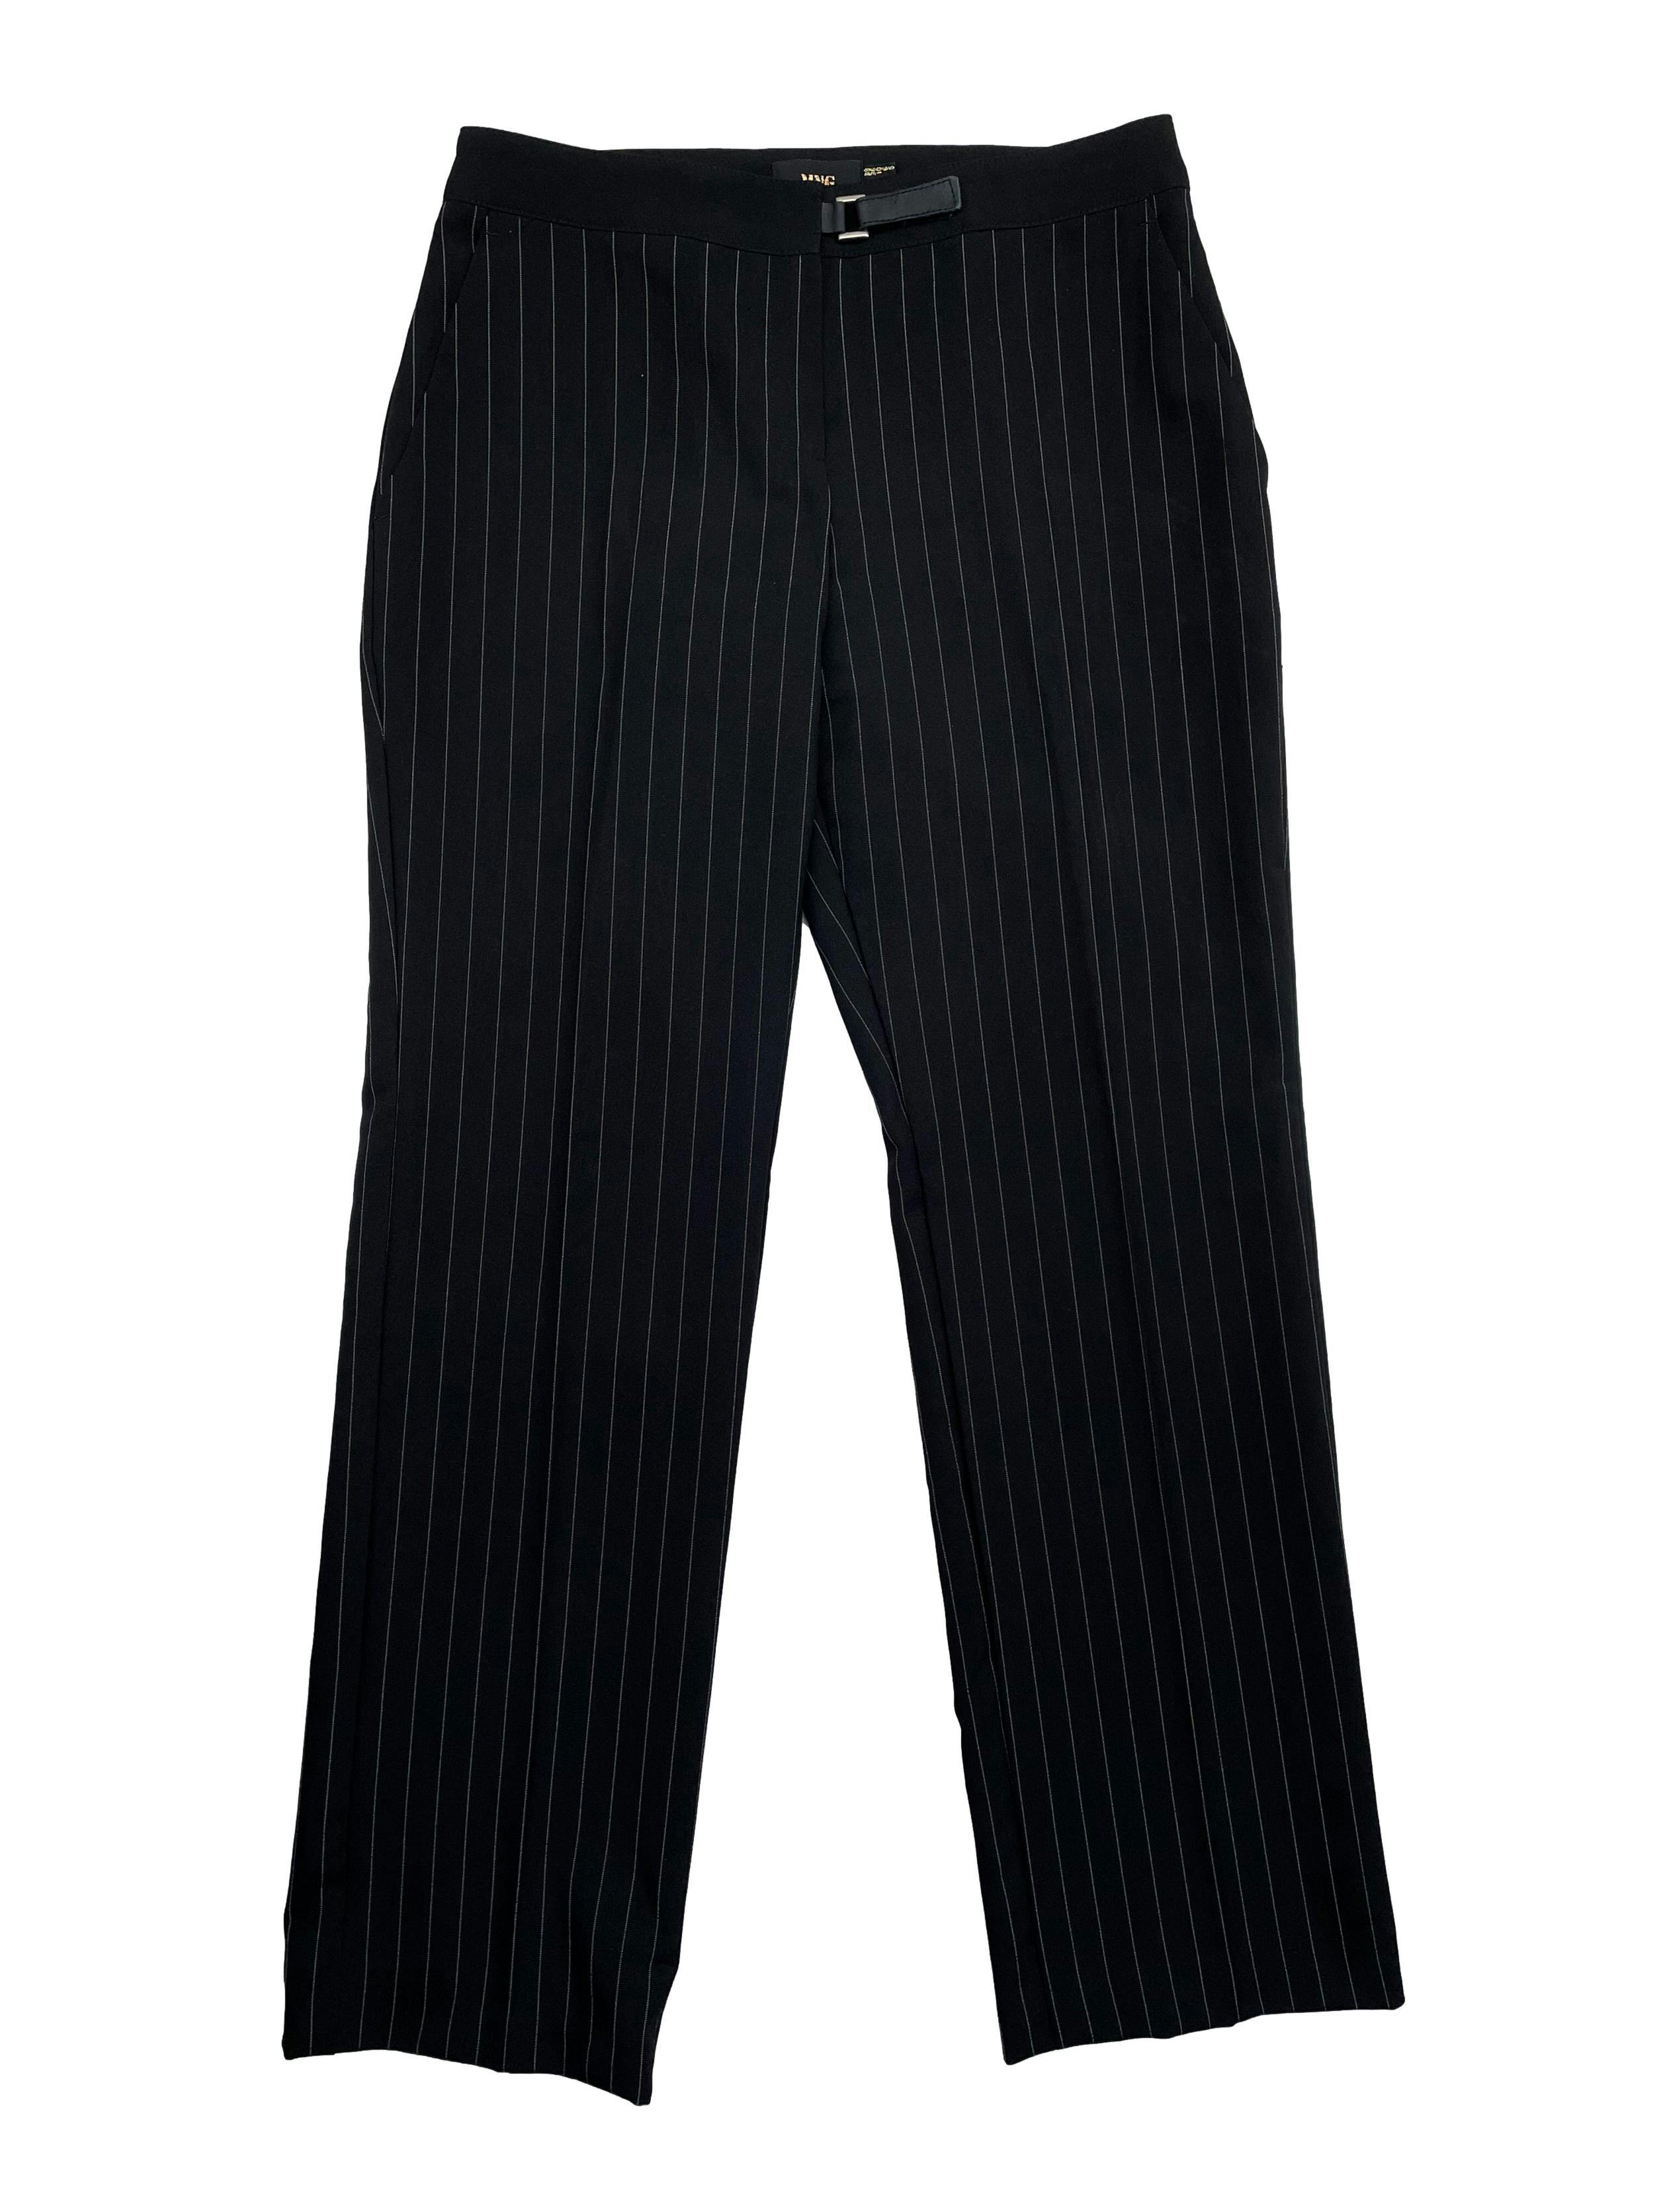 Pantalón de vestir Mango con rayas diplomáticas, corte recto, bolsillos laterales y cierre escondido frontal. Cintura 76cm, Largo 97cm.